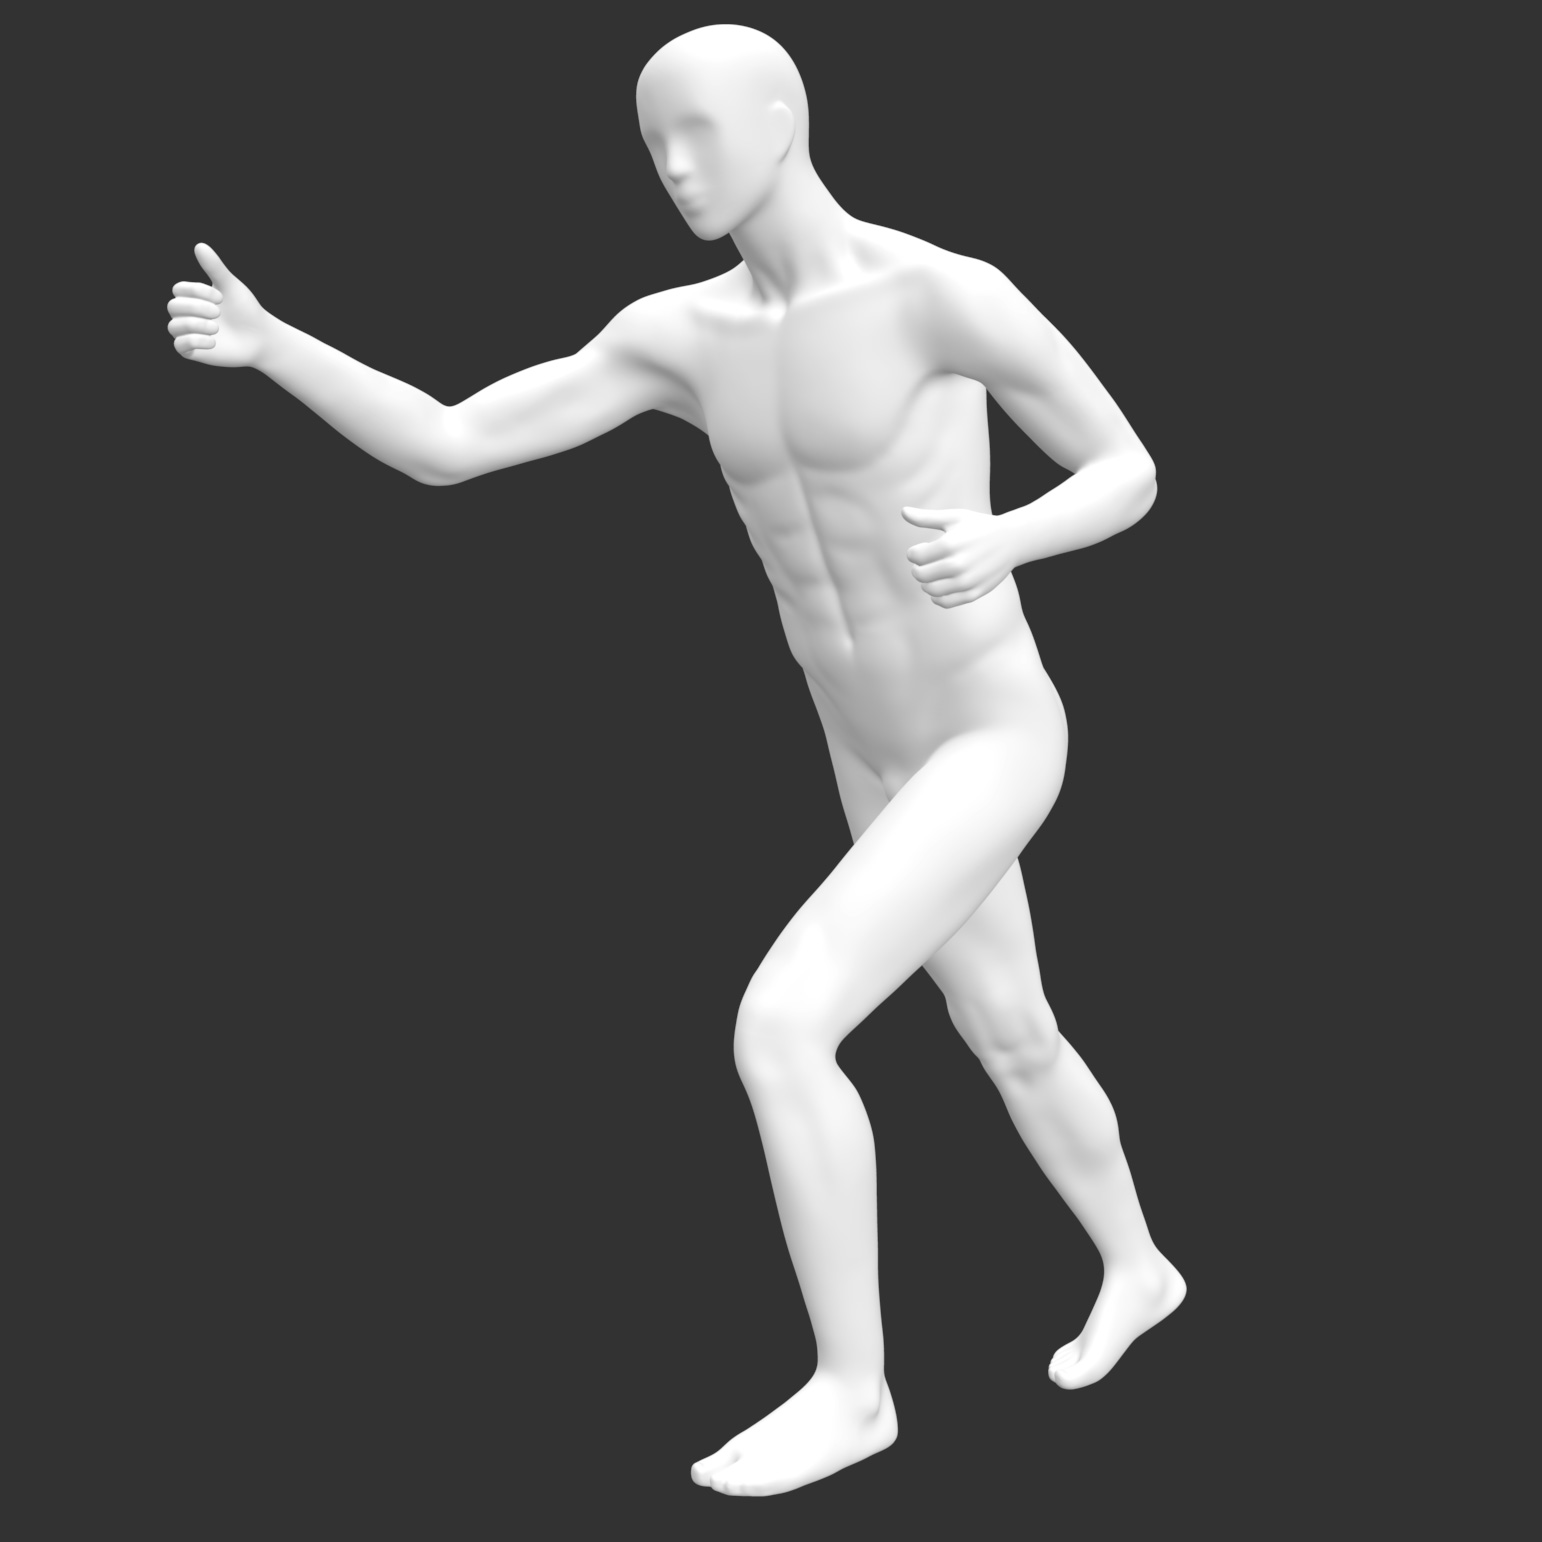 Esqui masculino modelo de impressão 3d de manequim